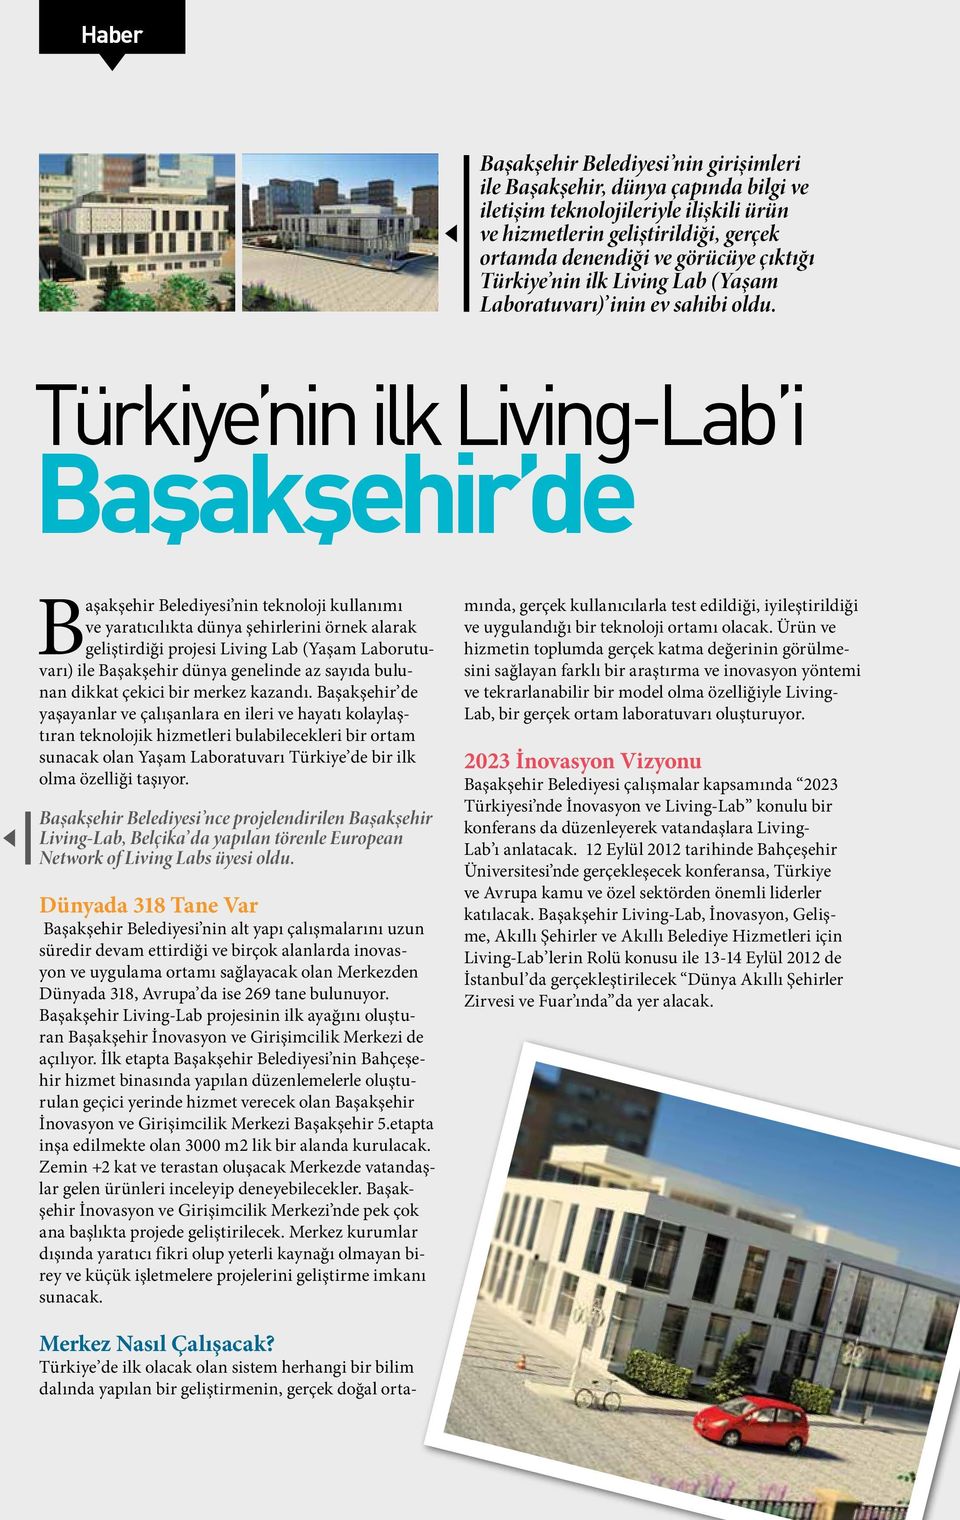 Türkiye nin ilk Living-Lab i Başakşehir de Başakşehir Belediyesi nin teknoloji kullanımı ve yaratıcılıkta dünya şehirlerini örnek alarak geliştirdiği projesi Living Lab (Yaşam Laborutuvarı) ile